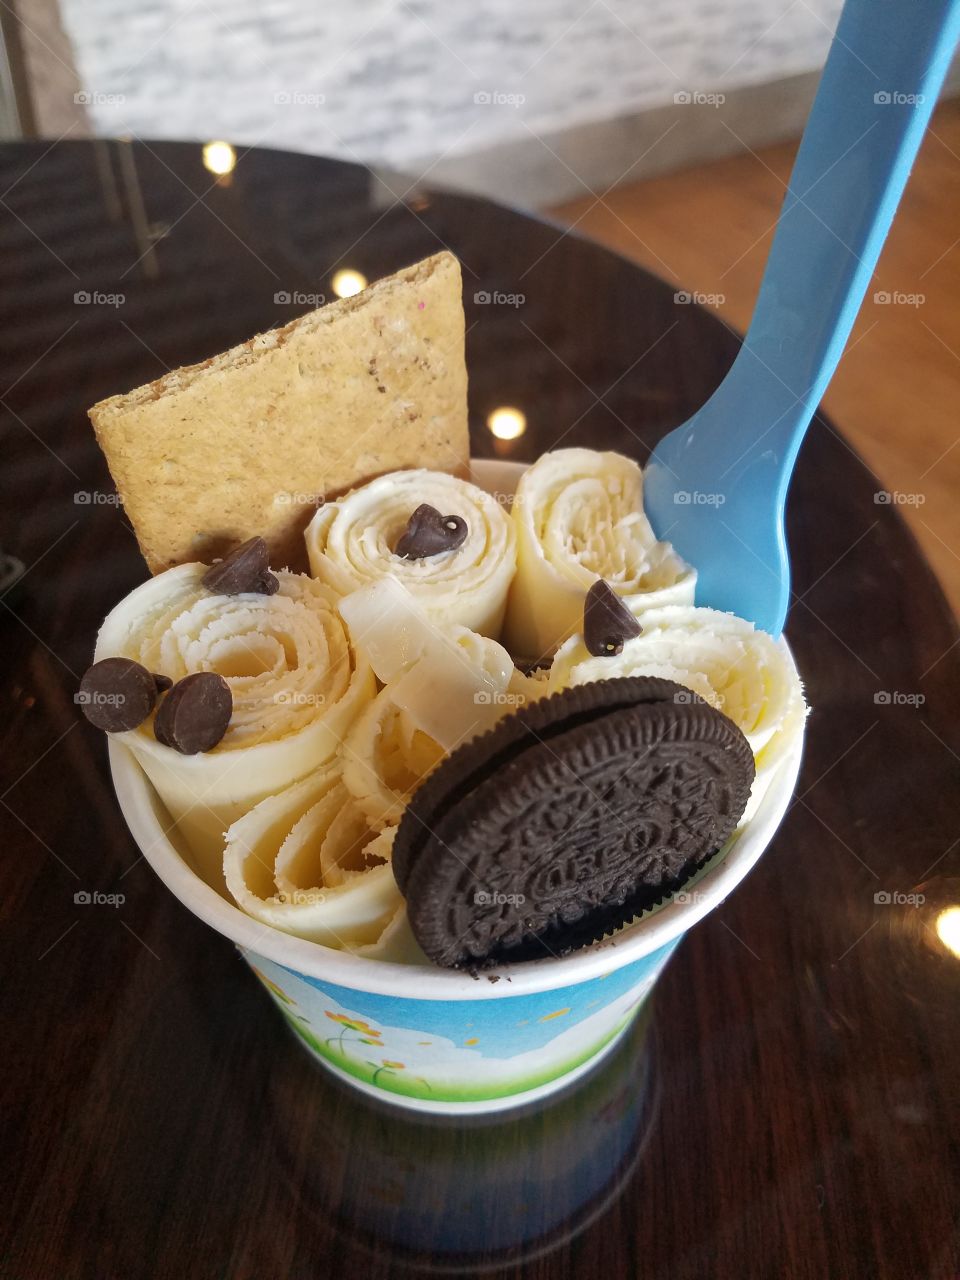 Vanilla Swirls of Ice Cream with Choclate Chips Oreo and Graham Cracker